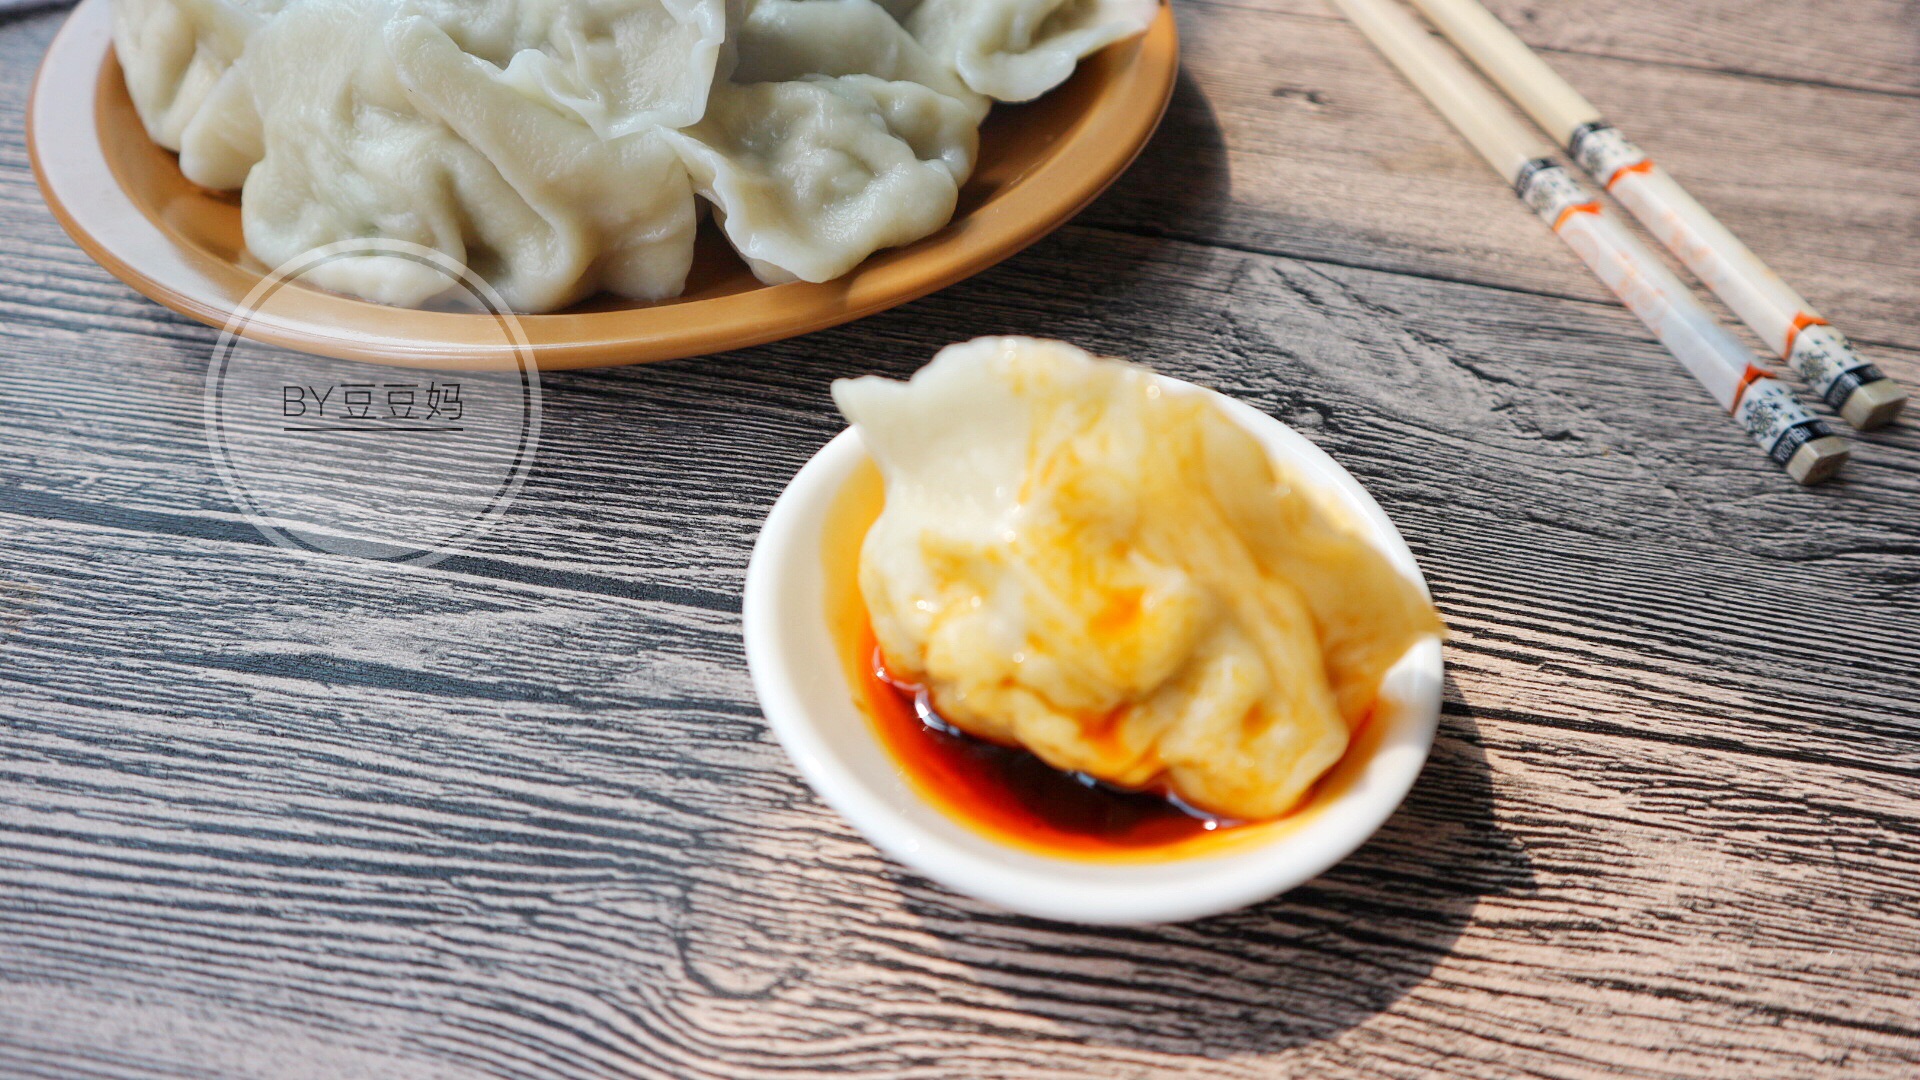 羊肉芹菜水饺,羊肉芹菜水饺的家常做法 - 美食杰羊肉芹菜水饺做法大全